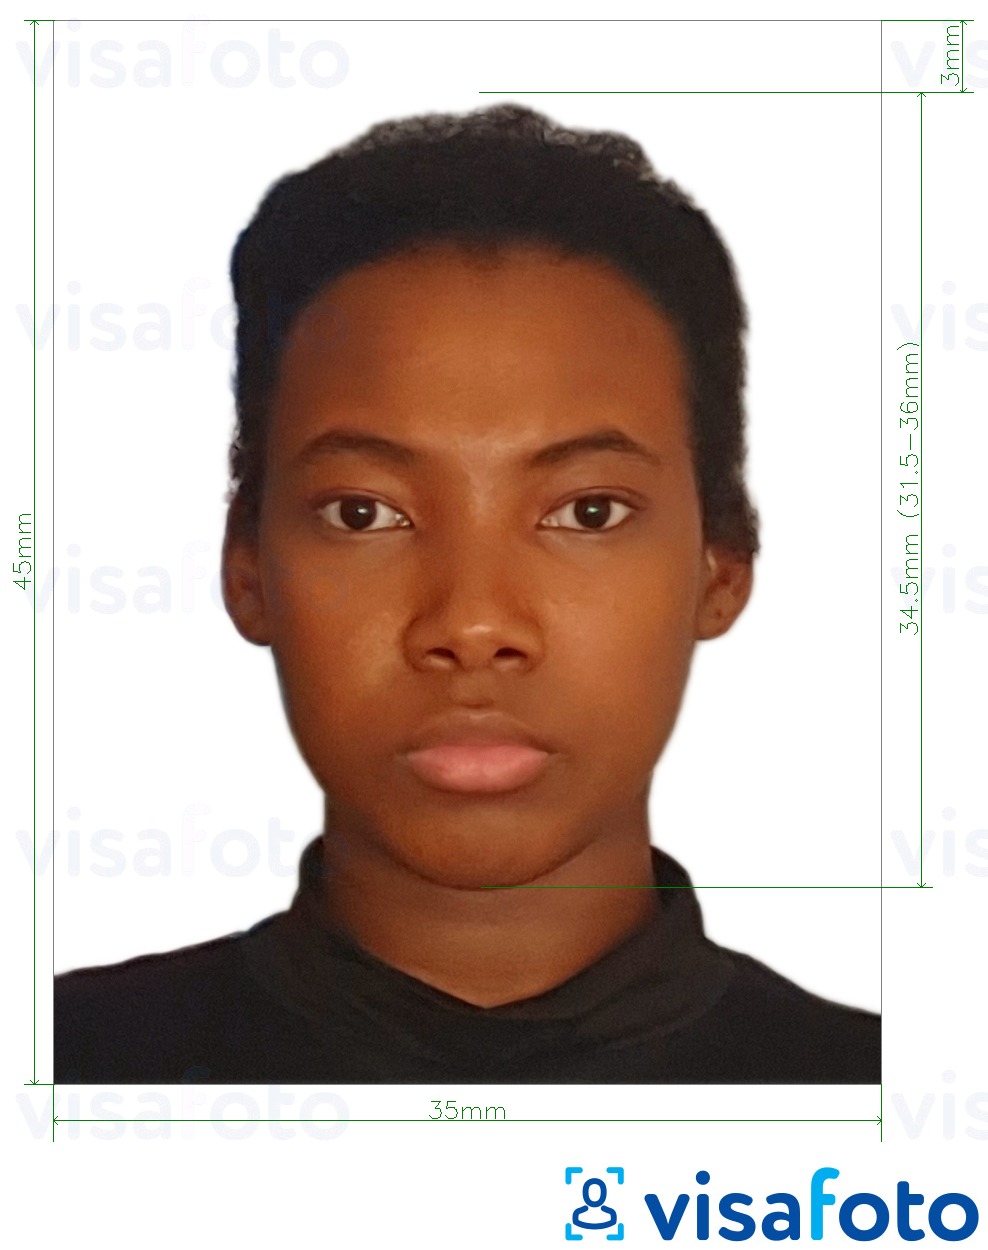 सटीक आकार विनिर्देश के साथ फिजी पासपोर्ट 35x45 मिमी (3.5x4.5 सेमी) के लिए तस्वीर का उदाहरण